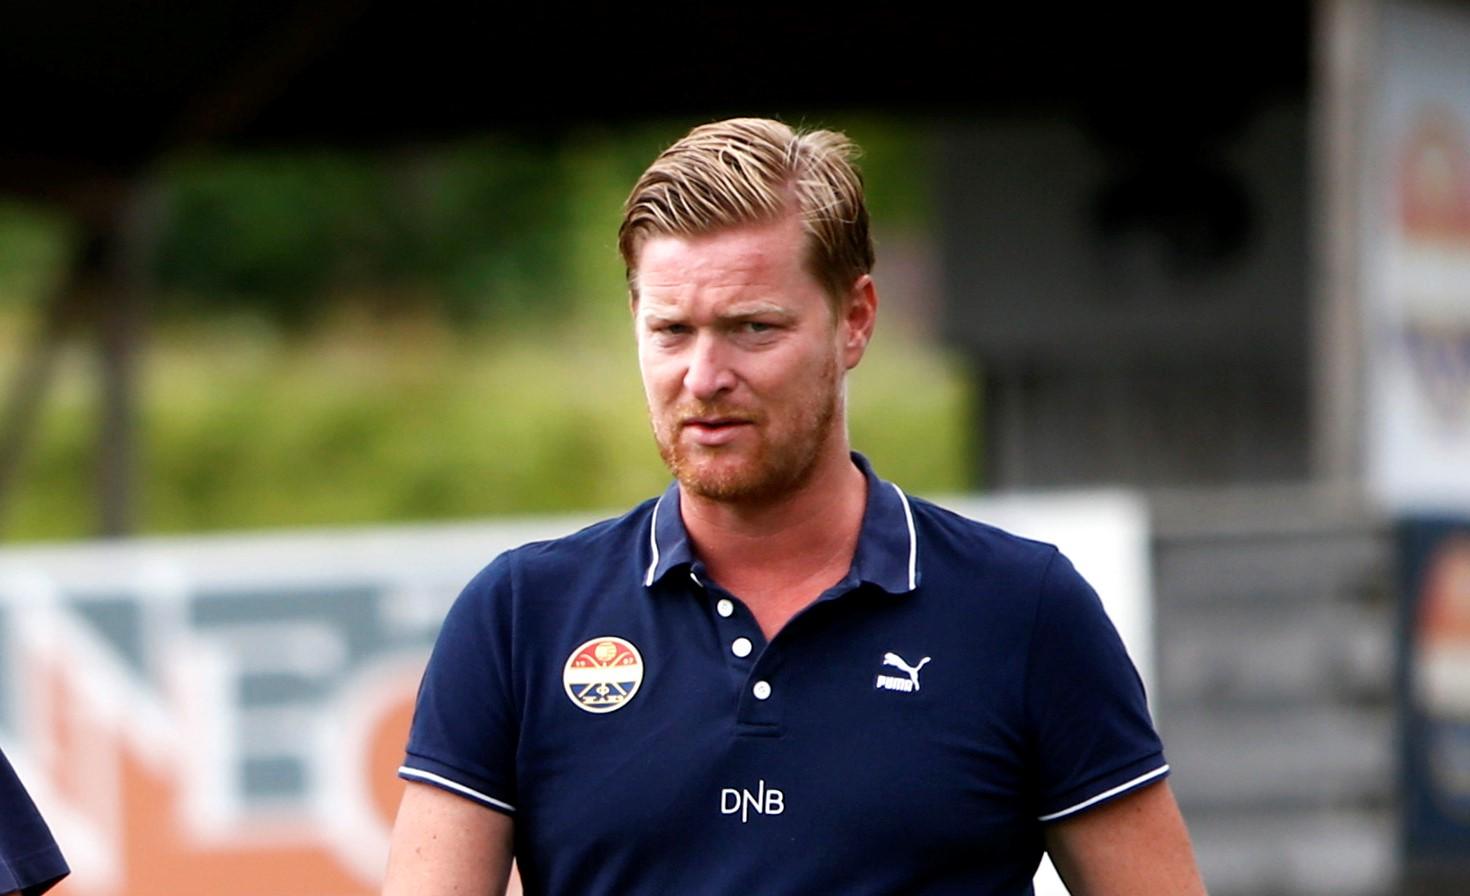 TRUFFET AV SYKDOM: Strømsgodsets seriestart mot Lillestrøm måtte utsettes på grunn av coronasykdom. Her er klubbens daglige leder, Magne Jordan Nilsen.